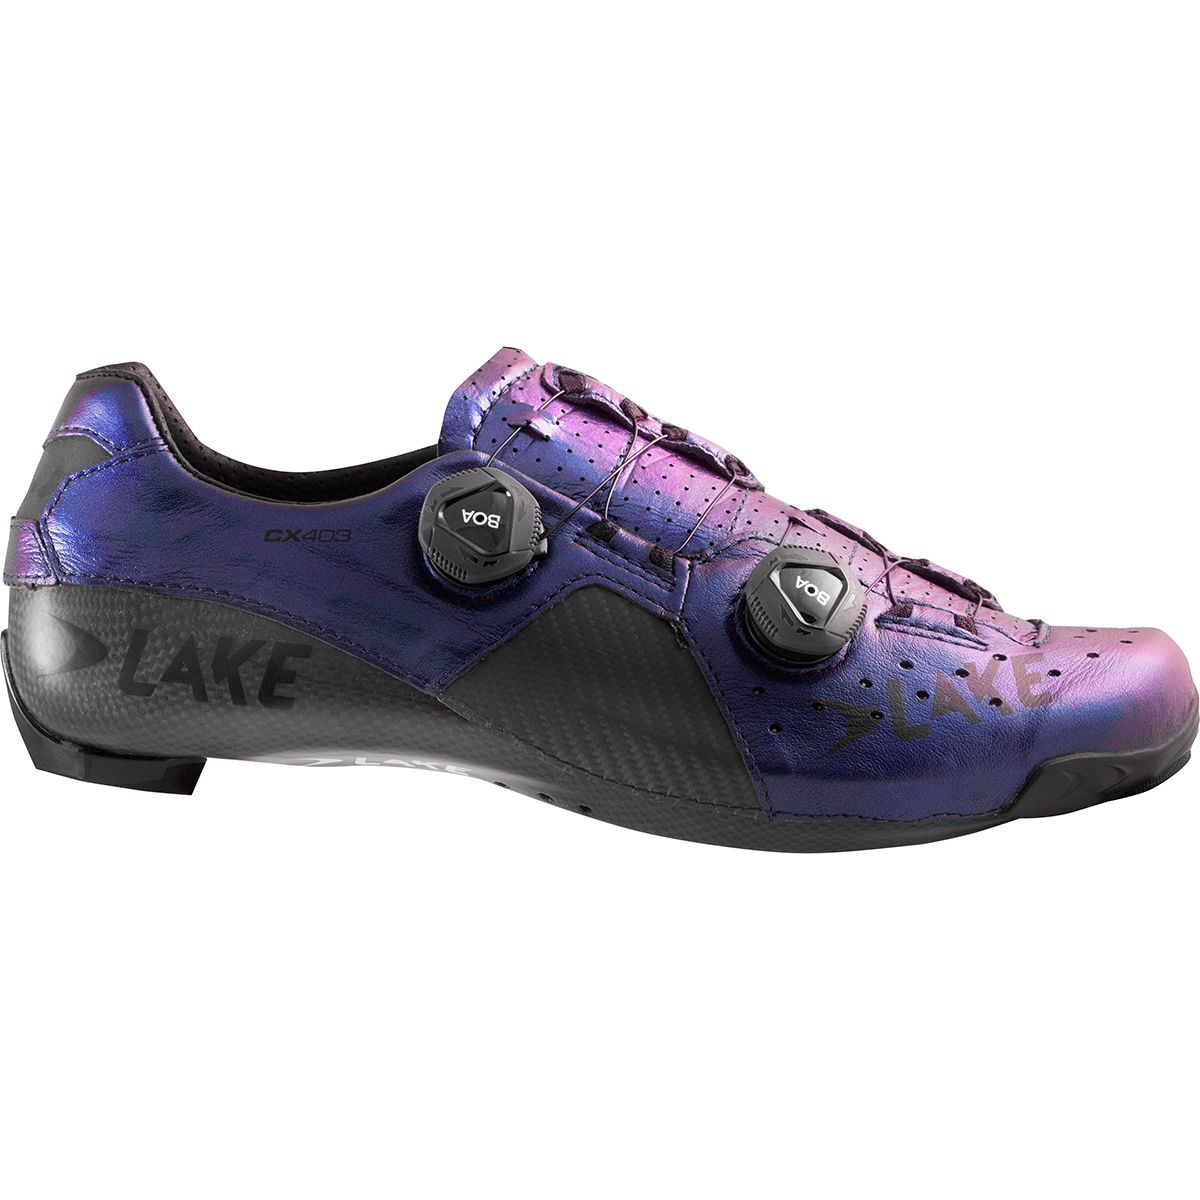 Lake CX403 Cycling Shoe - Men's Chameleon Blue/Black, 41.5